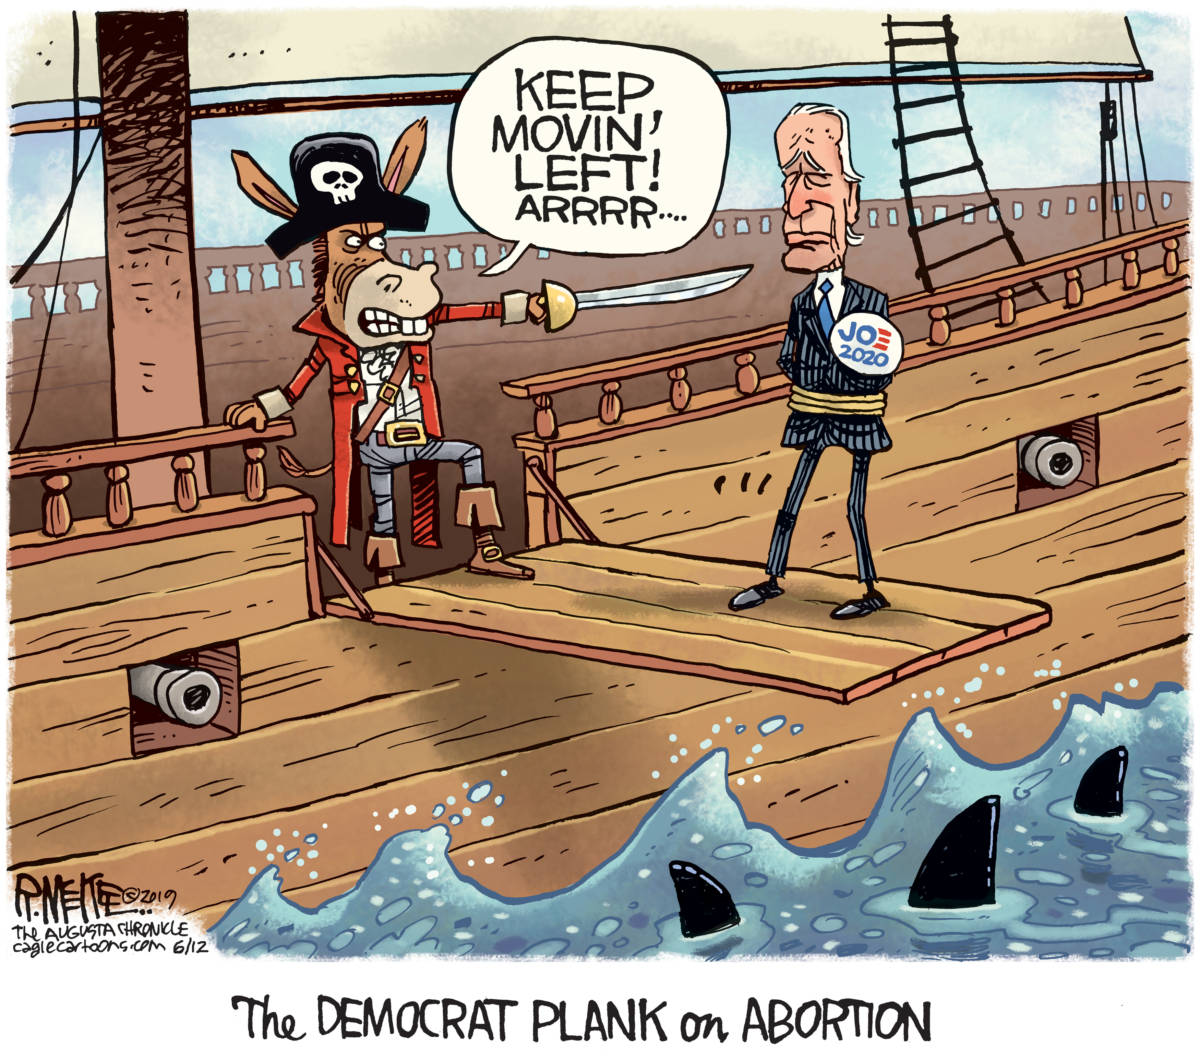 Biden Abortion Plank, Rick McKee, southern Utah, Utah, St. George, The Independent, Biden, 2020, abortion, Democrats, plank, pirates Hyde Amendment, flip flop,